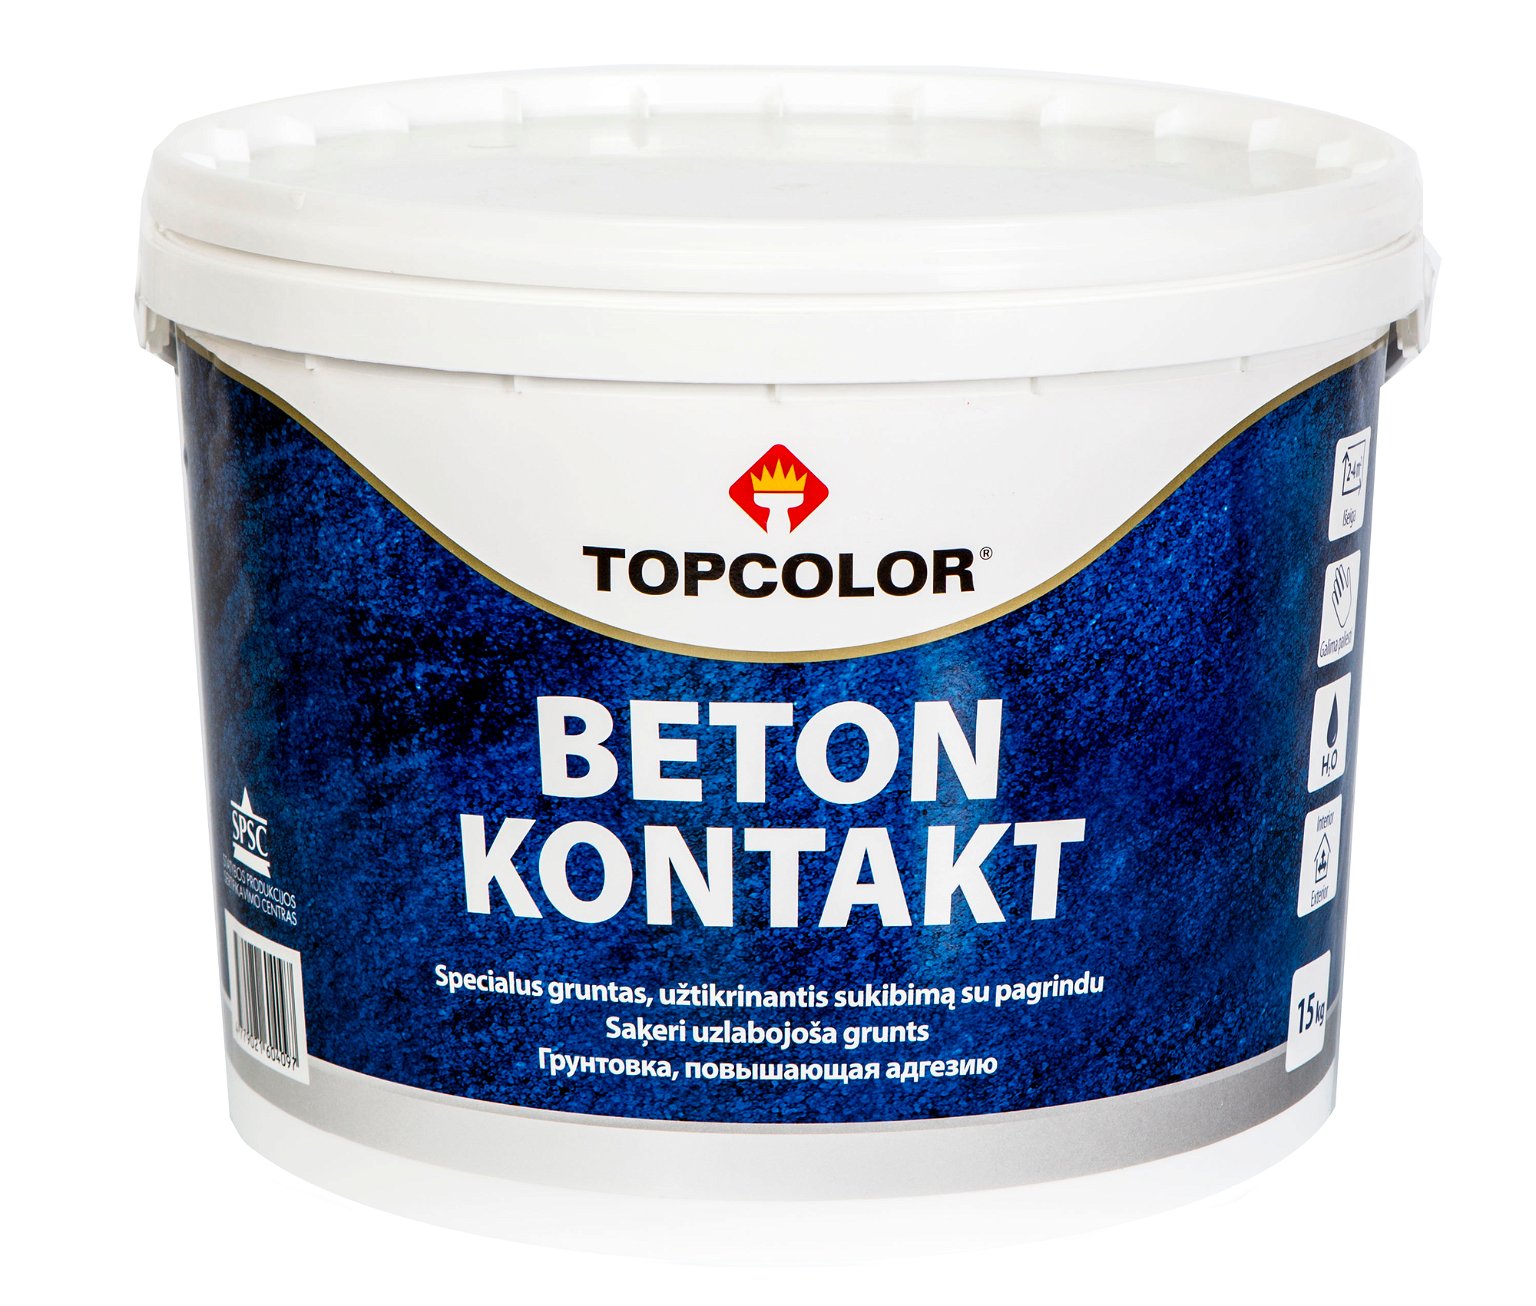 Sukibimą gerinantis gruntas TOPCOLOR BETON KONTAKT, 1,5 kg